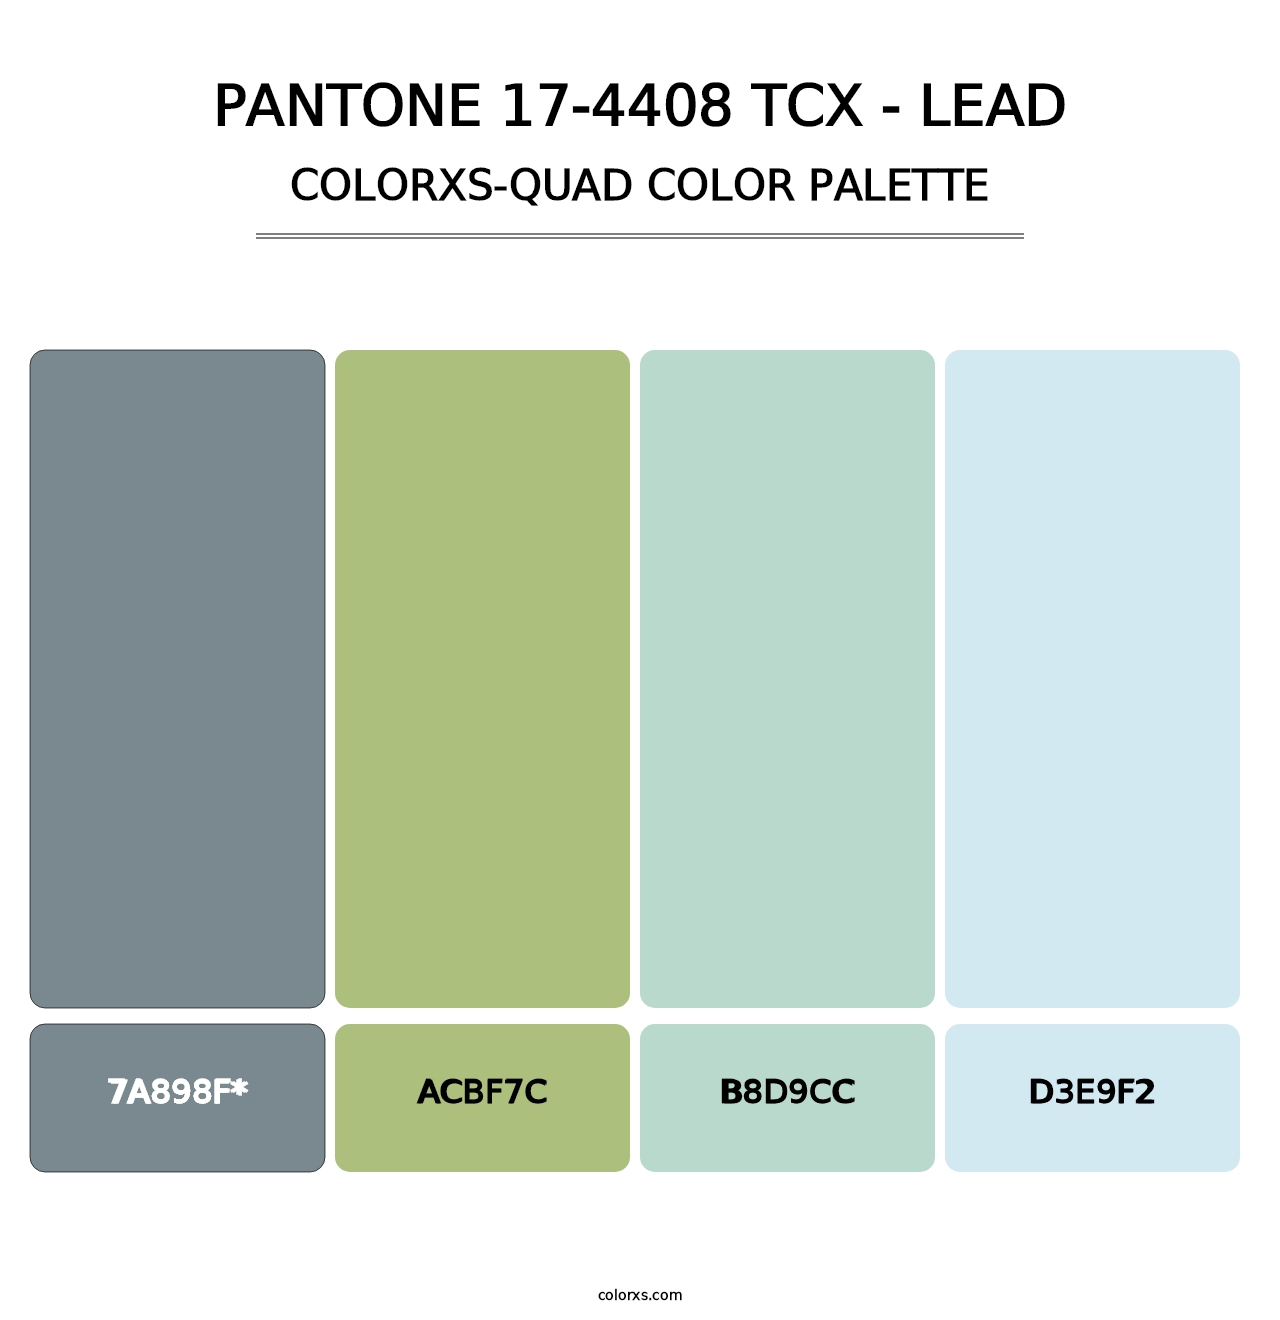 PANTONE 17-4408 TCX - Lead - Colorxs Quad Palette